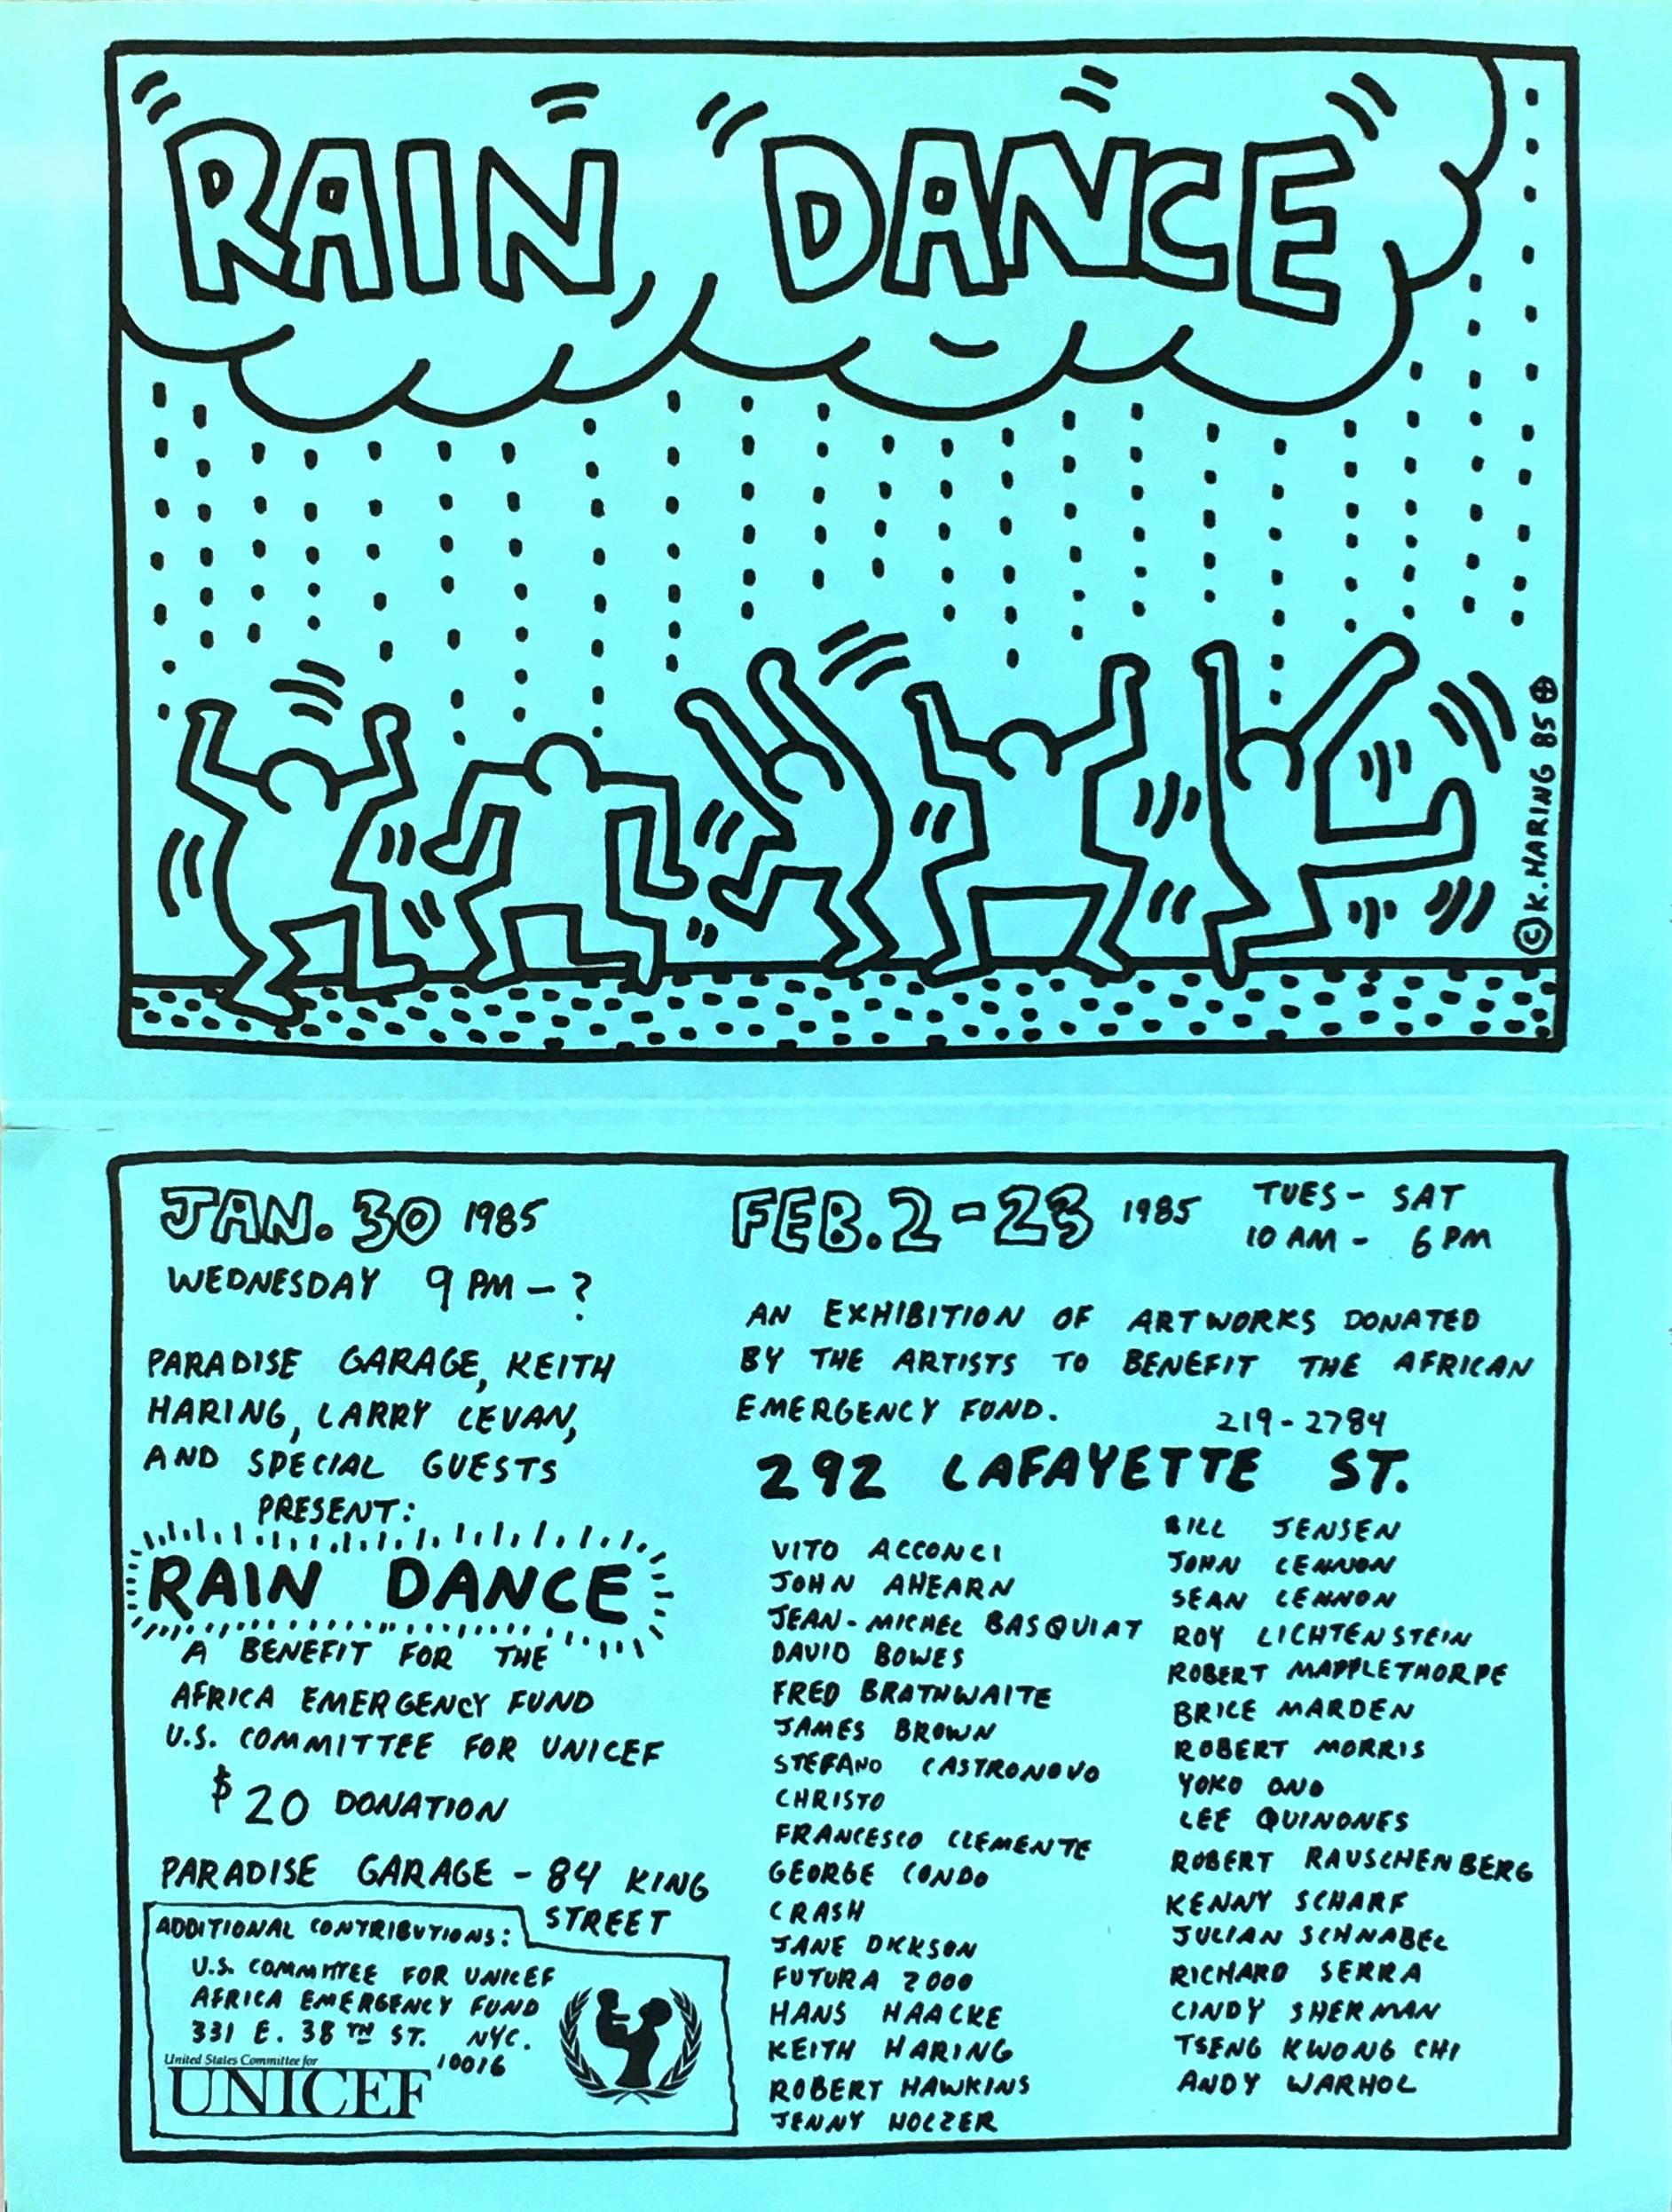 Affiche de la danse de la pluie de Keith Haring (Keith Haring Paradise garage) 1